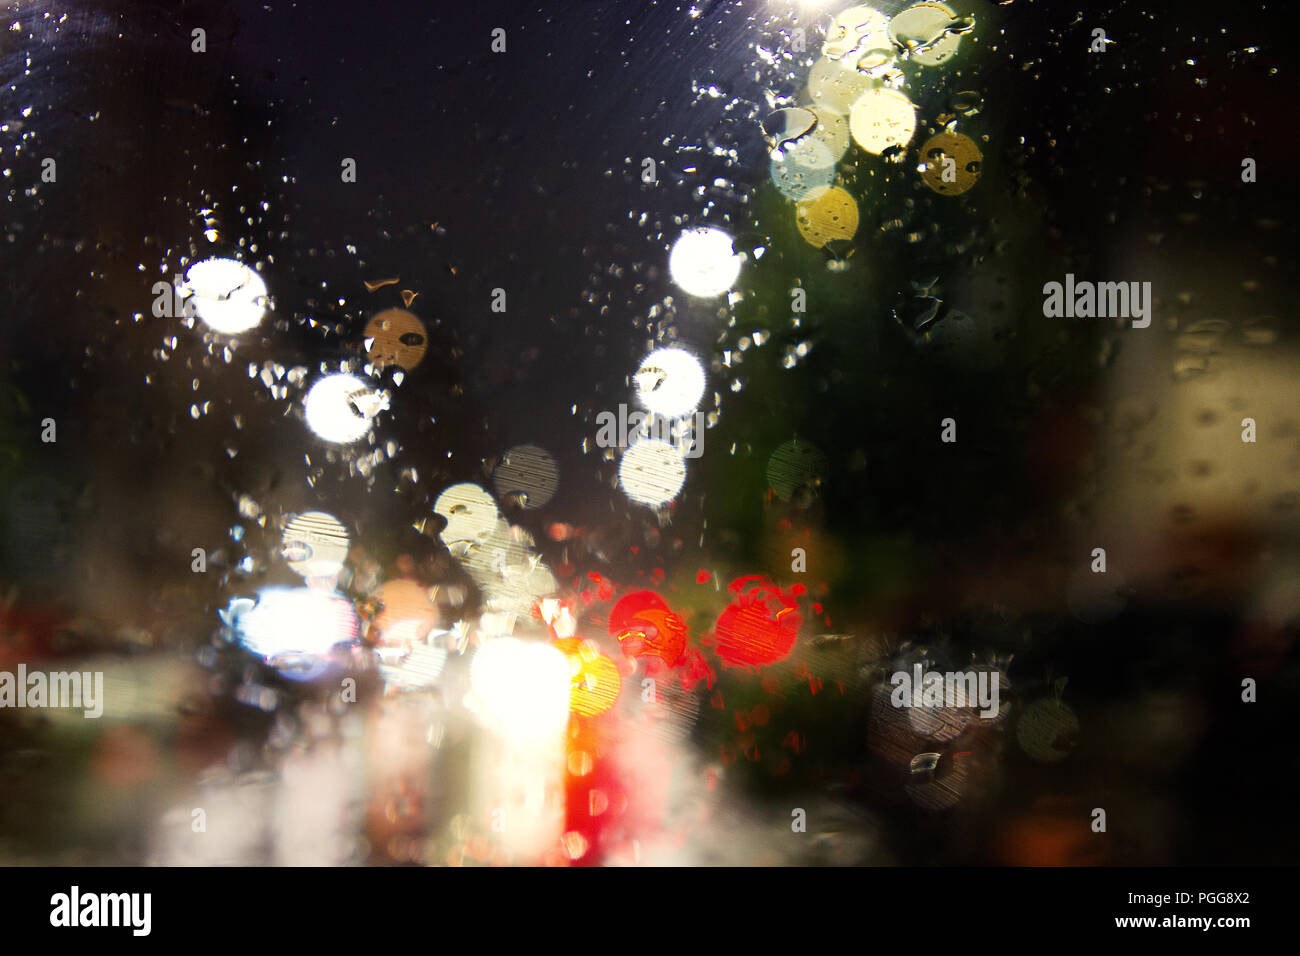 Eine bunte künstlerische street view in einer regnerischen Nacht Stockfoto